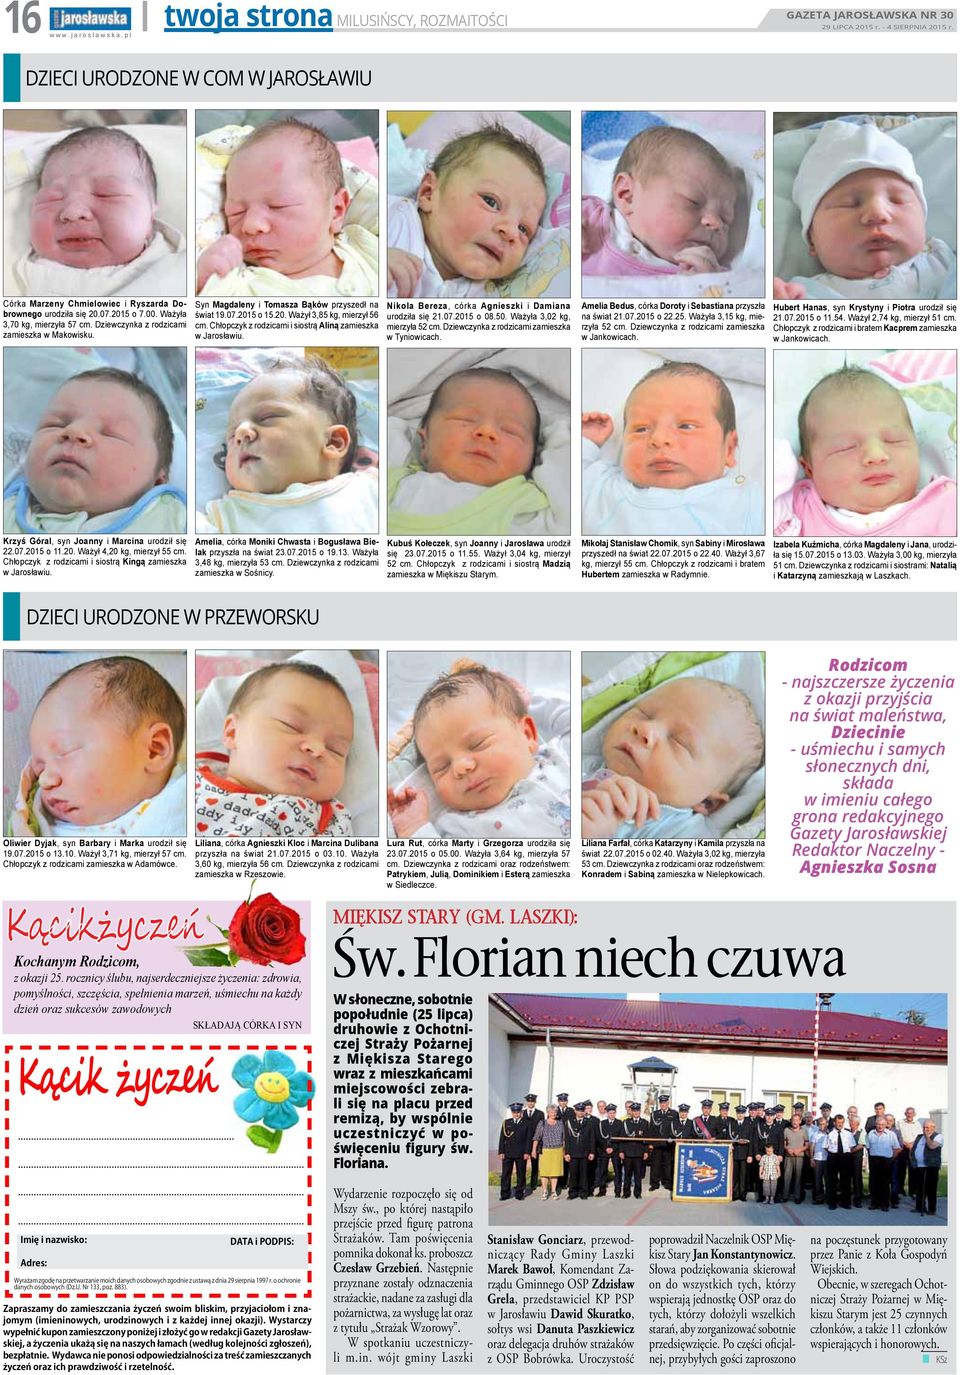 Chłopczyk z rodzicami i siostrą Aliną zamieszka w Jarosławiu. Nikola Bereza, córka Agnieszki i Damiana urodziła się 21.07.2015 o 08.50. Ważyła 3,02 kg, mierzyła 52 cm.